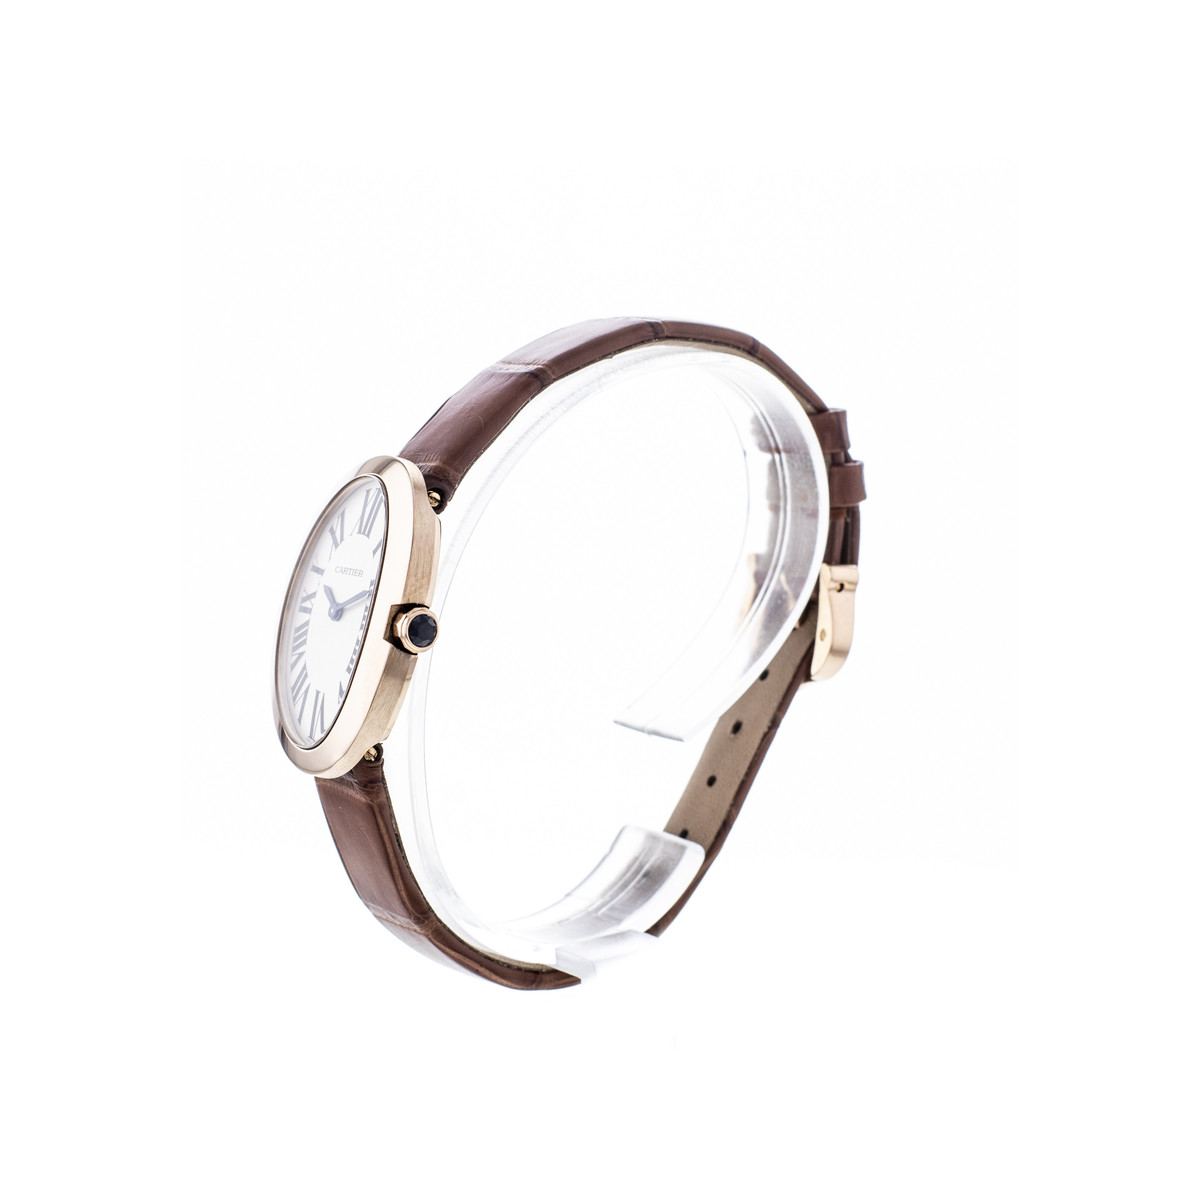 Montre d'occasion Cartier Baignoire femme or rose 750 bracelet cuir marron - vue 2